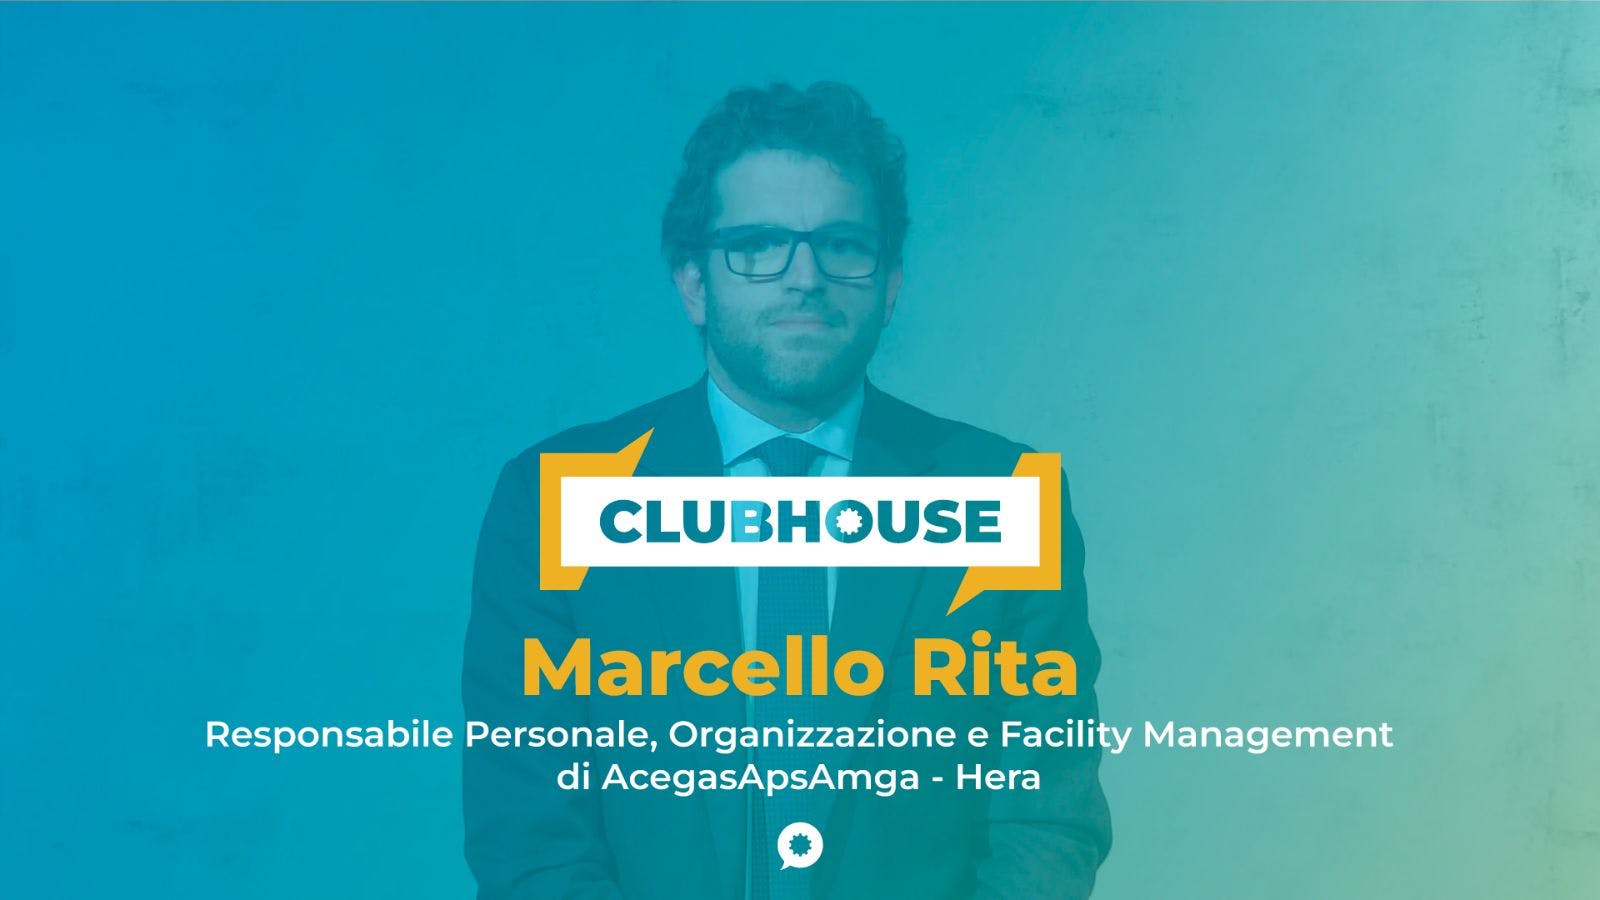 img 1: “Marcello Rita, Responsabile Personale, Organizzazione e Facility Manager di AcegasApsAmga - Hera”